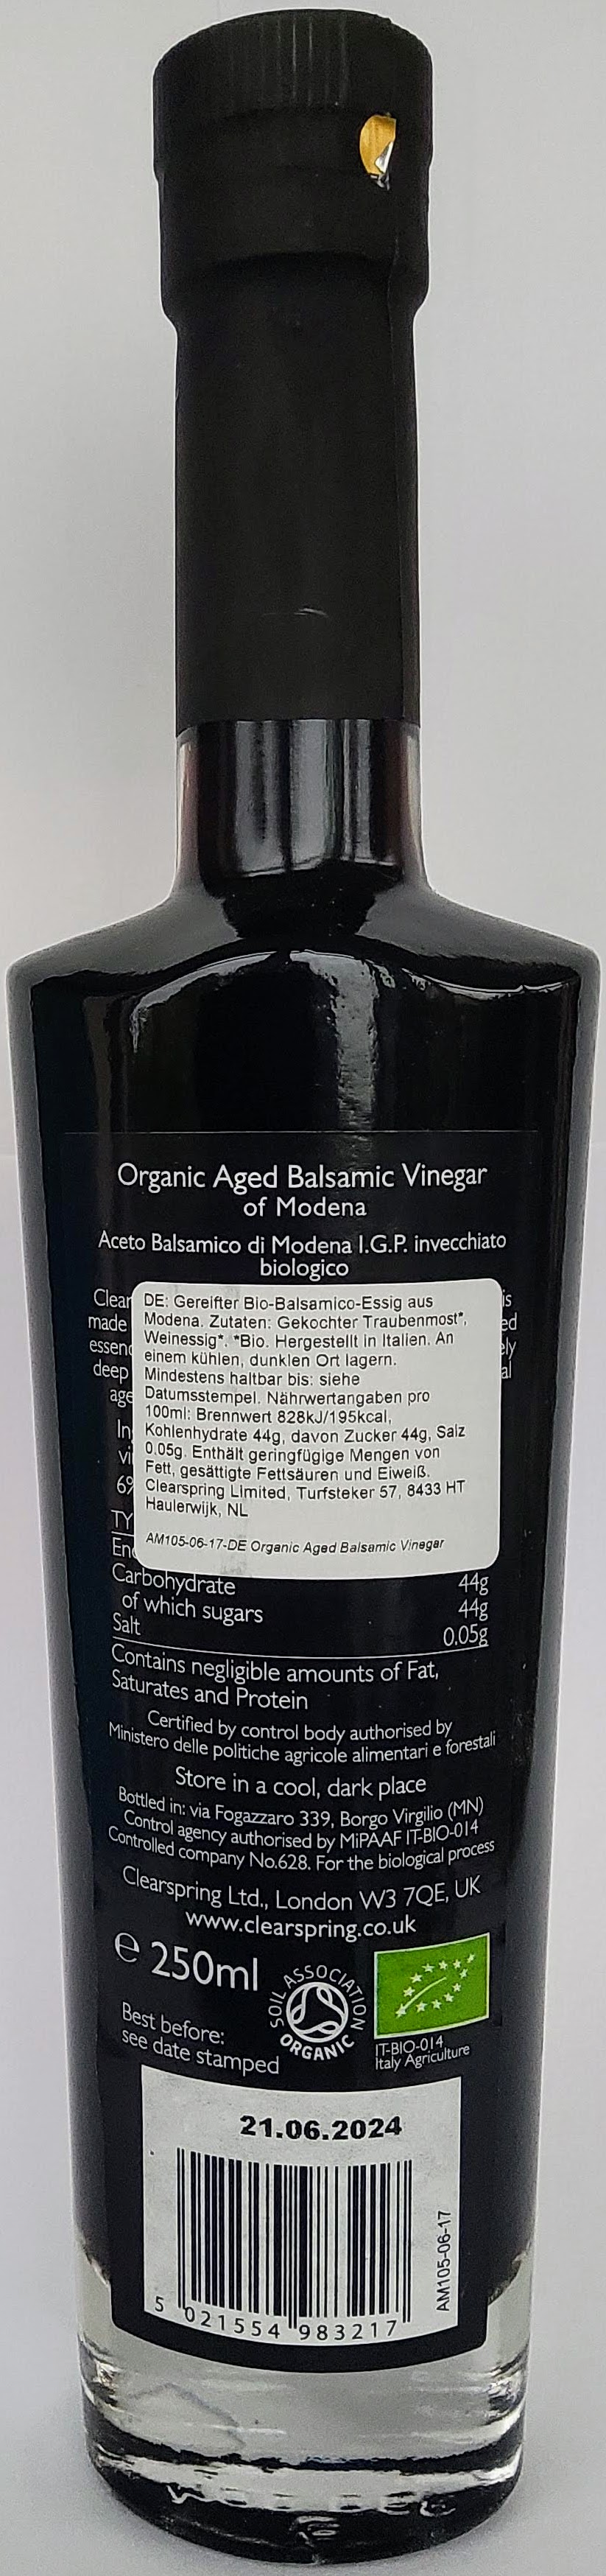 Gereifter Balsamico Essig aus Modena (Aged Balsamic Vinegar of Modena)